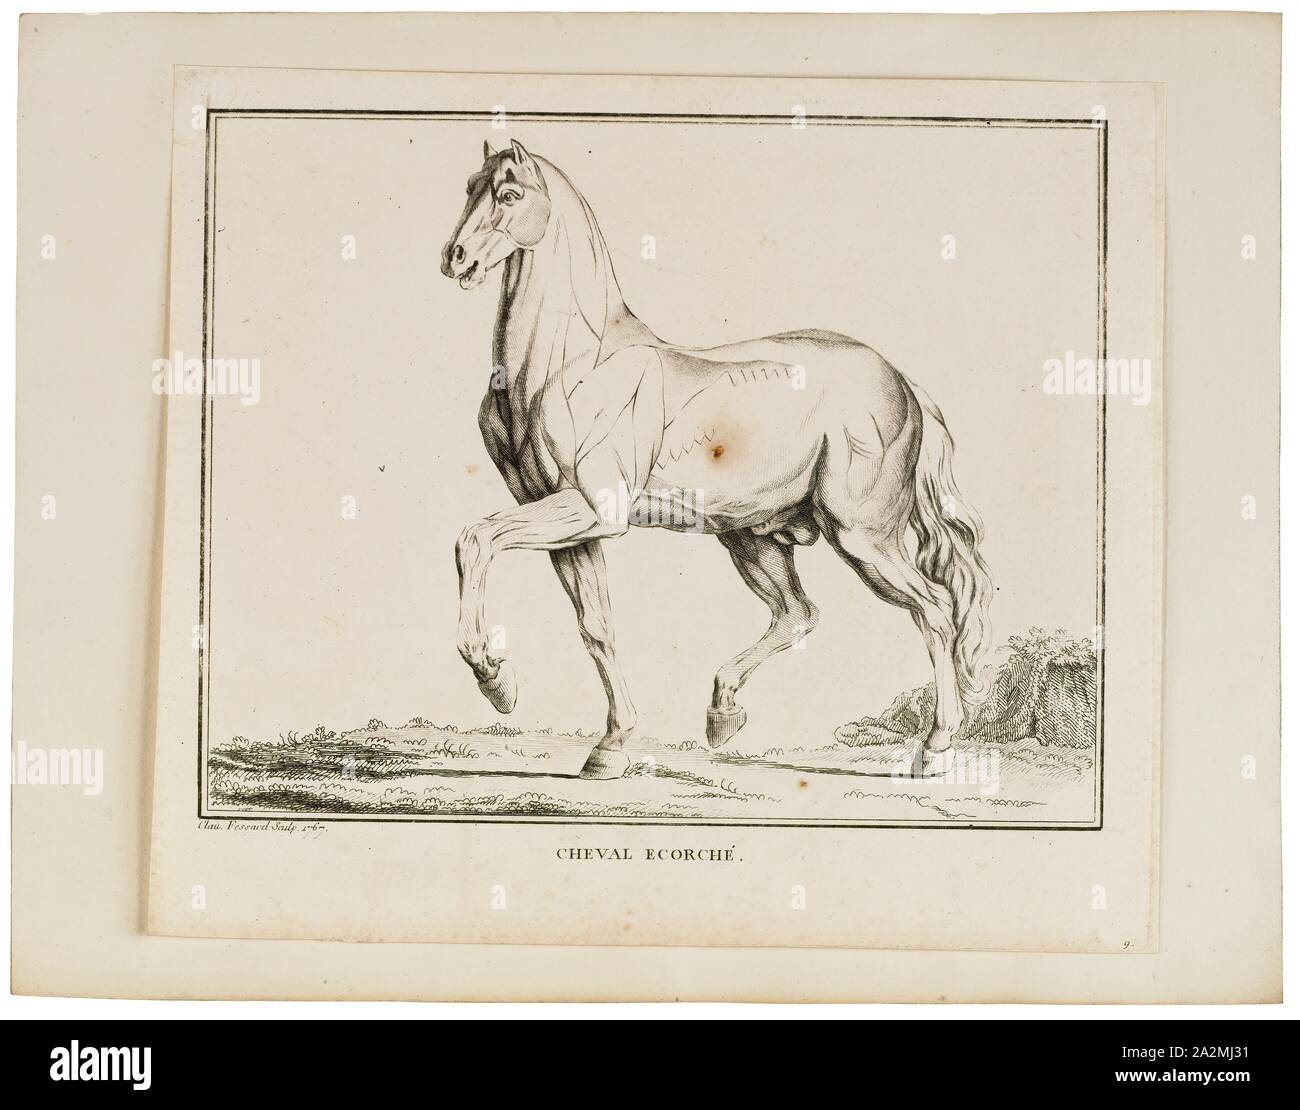 Equus caballus, Imprimer, le cheval (Equus ferus caballus) est l'une des deux sous-espèces existantes d'Equus ferus. C'est un drôle de mammifère ongulé à longs doigts appartenant à la famille des équidés. Le cheval a évolué au cours des 45 à 55 millions d'années à partir d'une petite créature multi-toed, Eohippus, dans le grand, seul animal à longs doigts d'aujourd'hui. L'homme a commencé à domestiquer les chevaux autour de 4000 avant J.-C., et leur domestication est soupçonné d'avoir été largement répandue en 3000 BC. Les chevaux dans la sous-espèce caballus sont domestiqués, bien que certaines populations domestiquées vivre dans la nature comme chevaux sauvages. Ces populations férales Banque D'Images